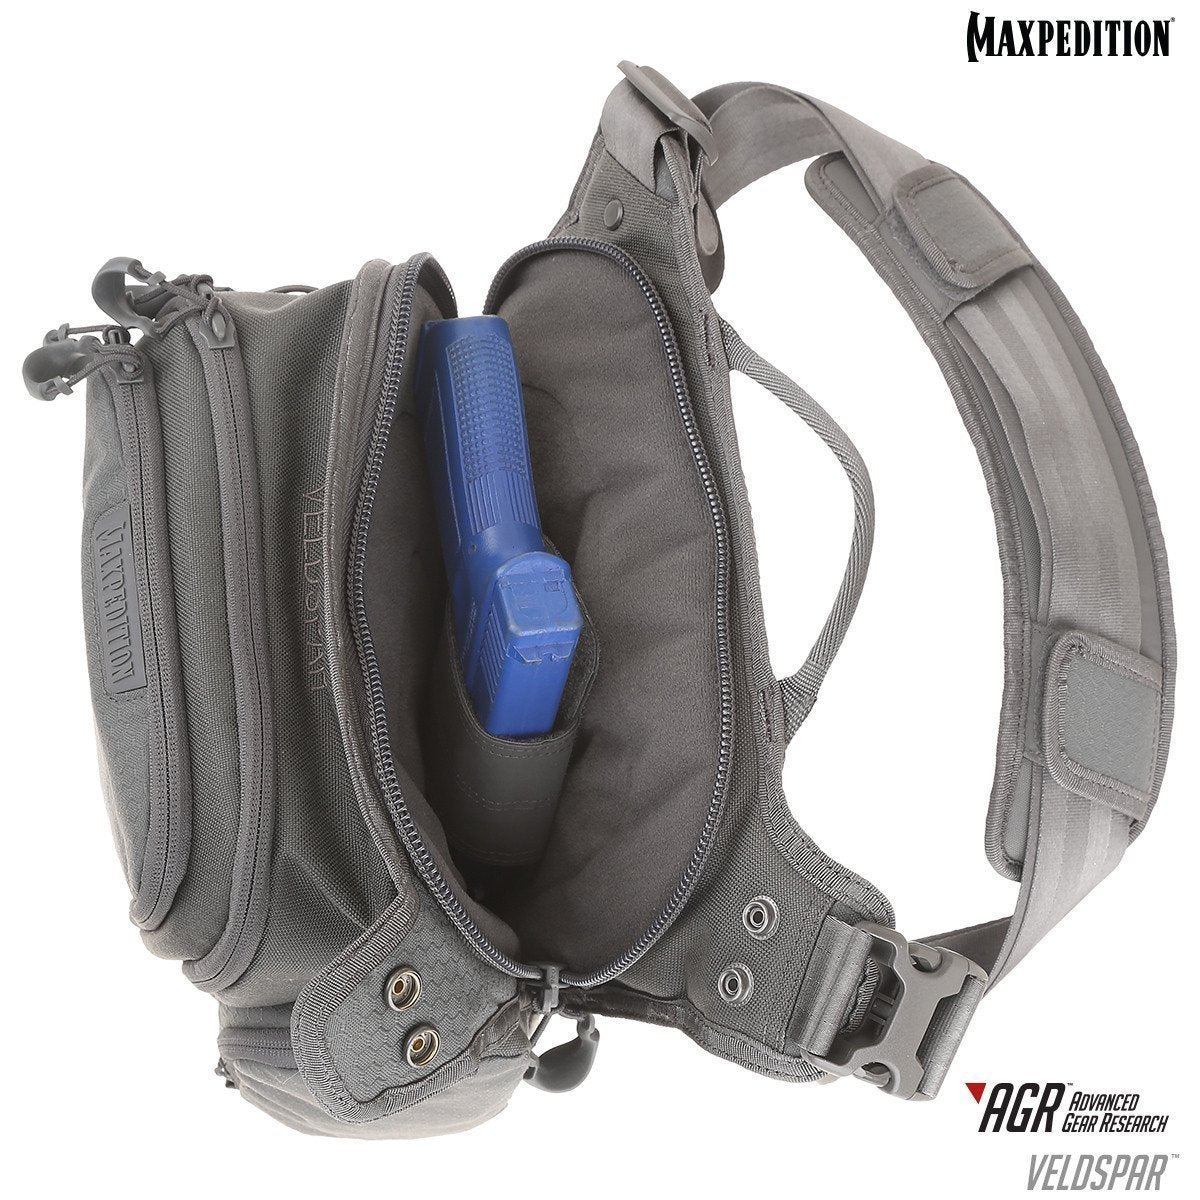 Maxpedition Veldspar Crossbody Shoulder Bag 8L Bags, Packs and Cases Maxpedition Tactical Gear Supplier Tactical Distributors Australia